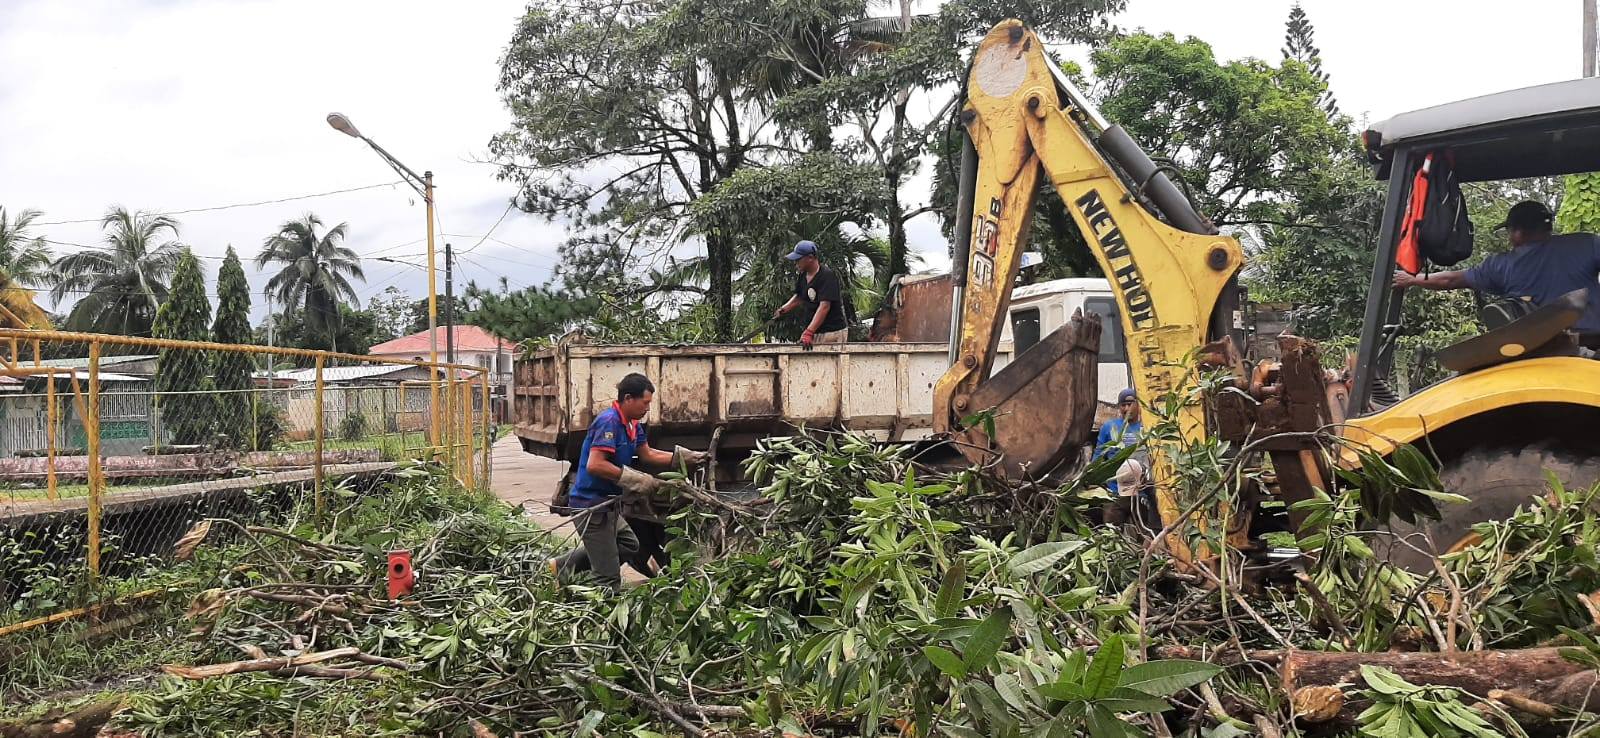 Continúan trabajos de limpieza en Bluefields   Managua. Radio La Primerísima